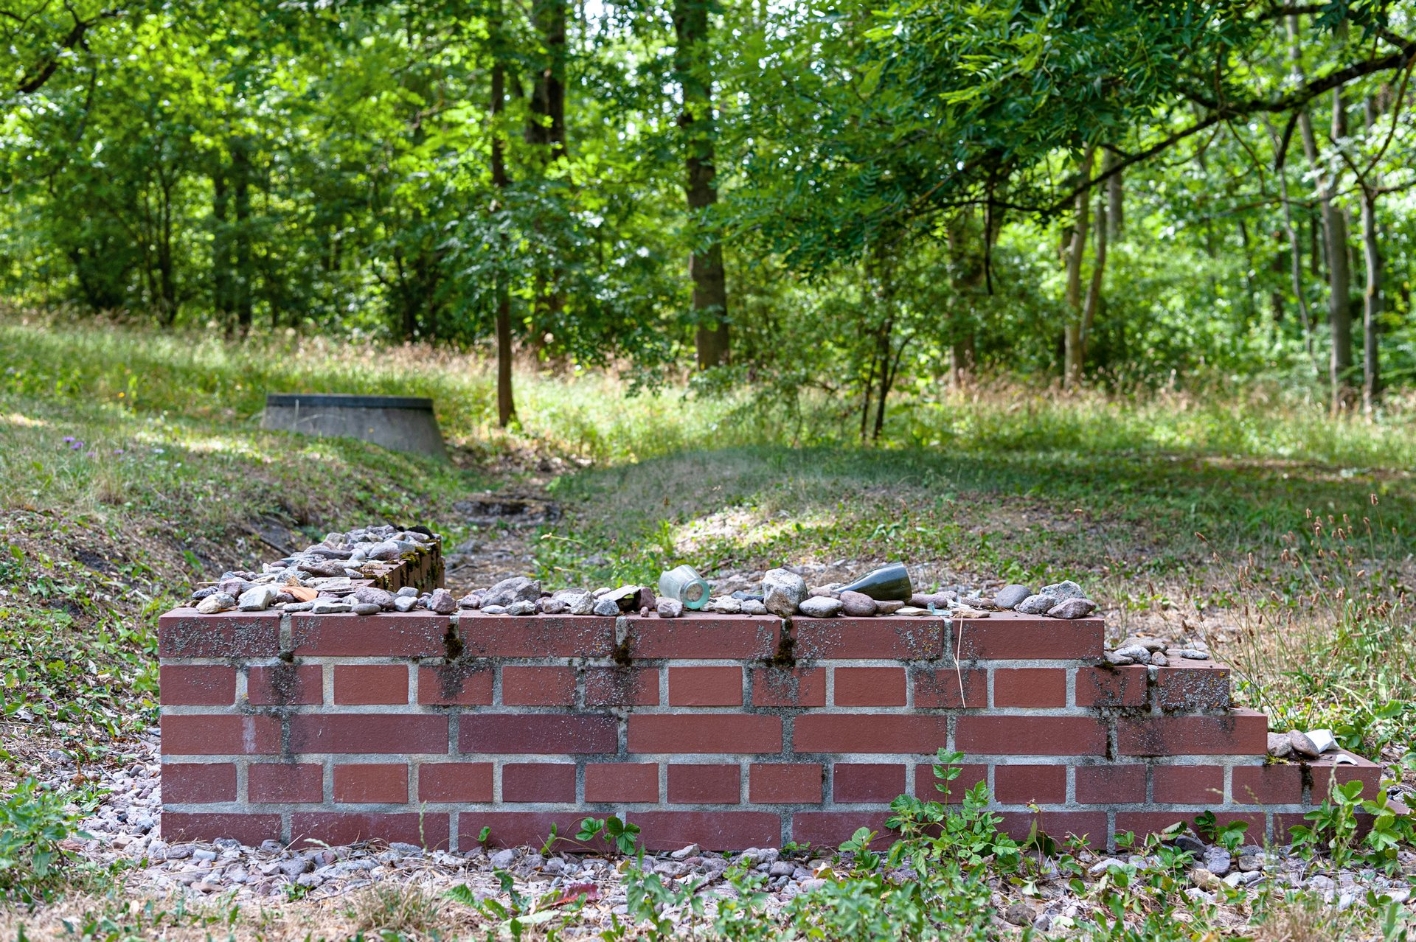 Ein kleiner, L-förmiger Mauerrest aus Backstein. Auf den niedrigen Mauerresten sind einzelne Fundstücke wie Steine oder Teile von Flaschen abgelegt.